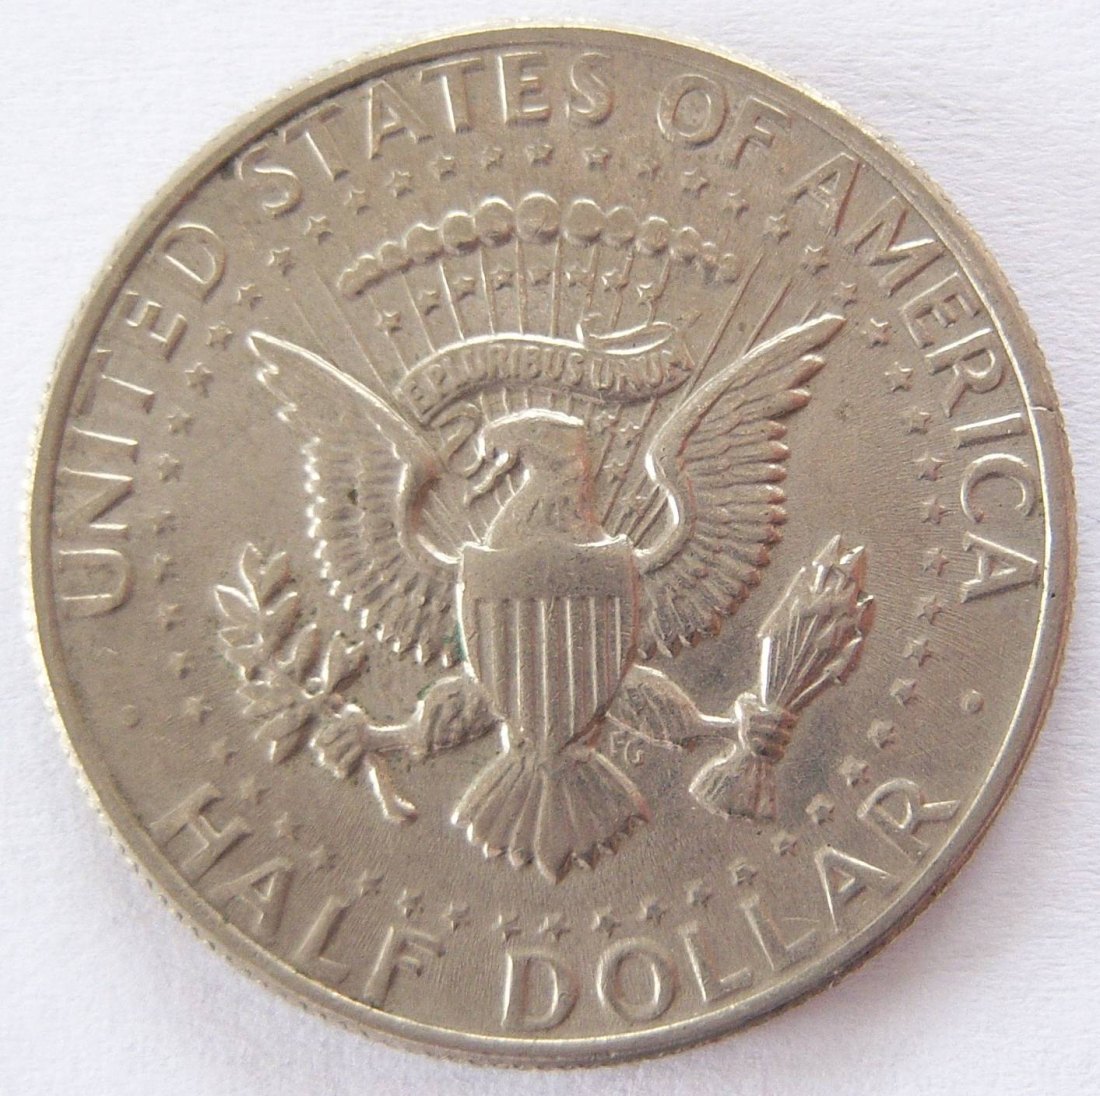  USA Kennedy 1/2 Half Dollar 1971   